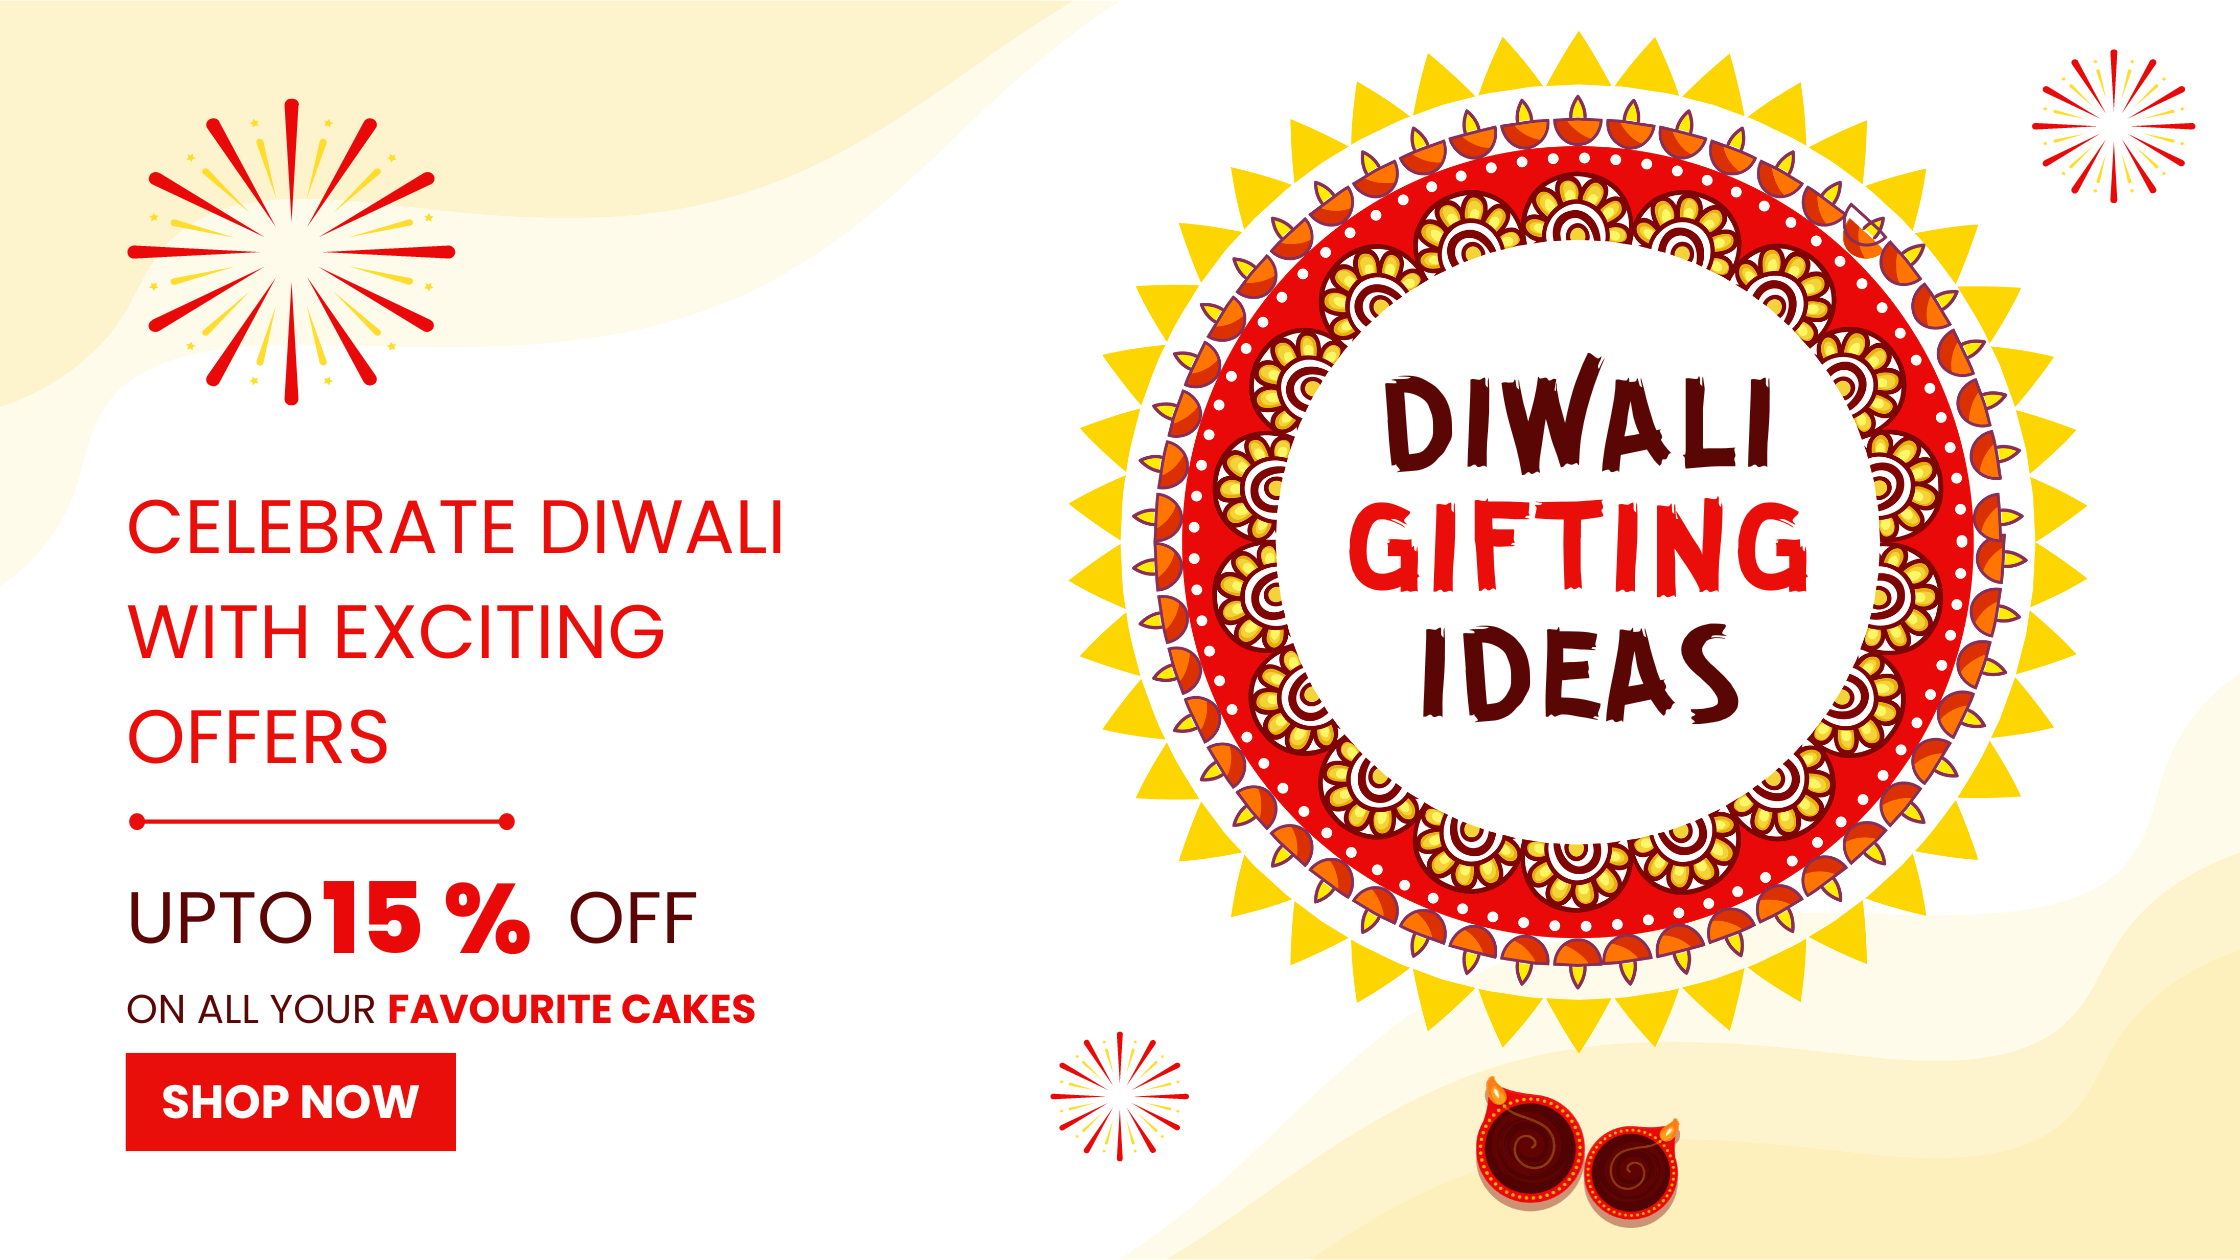 Diwali gifting ideas